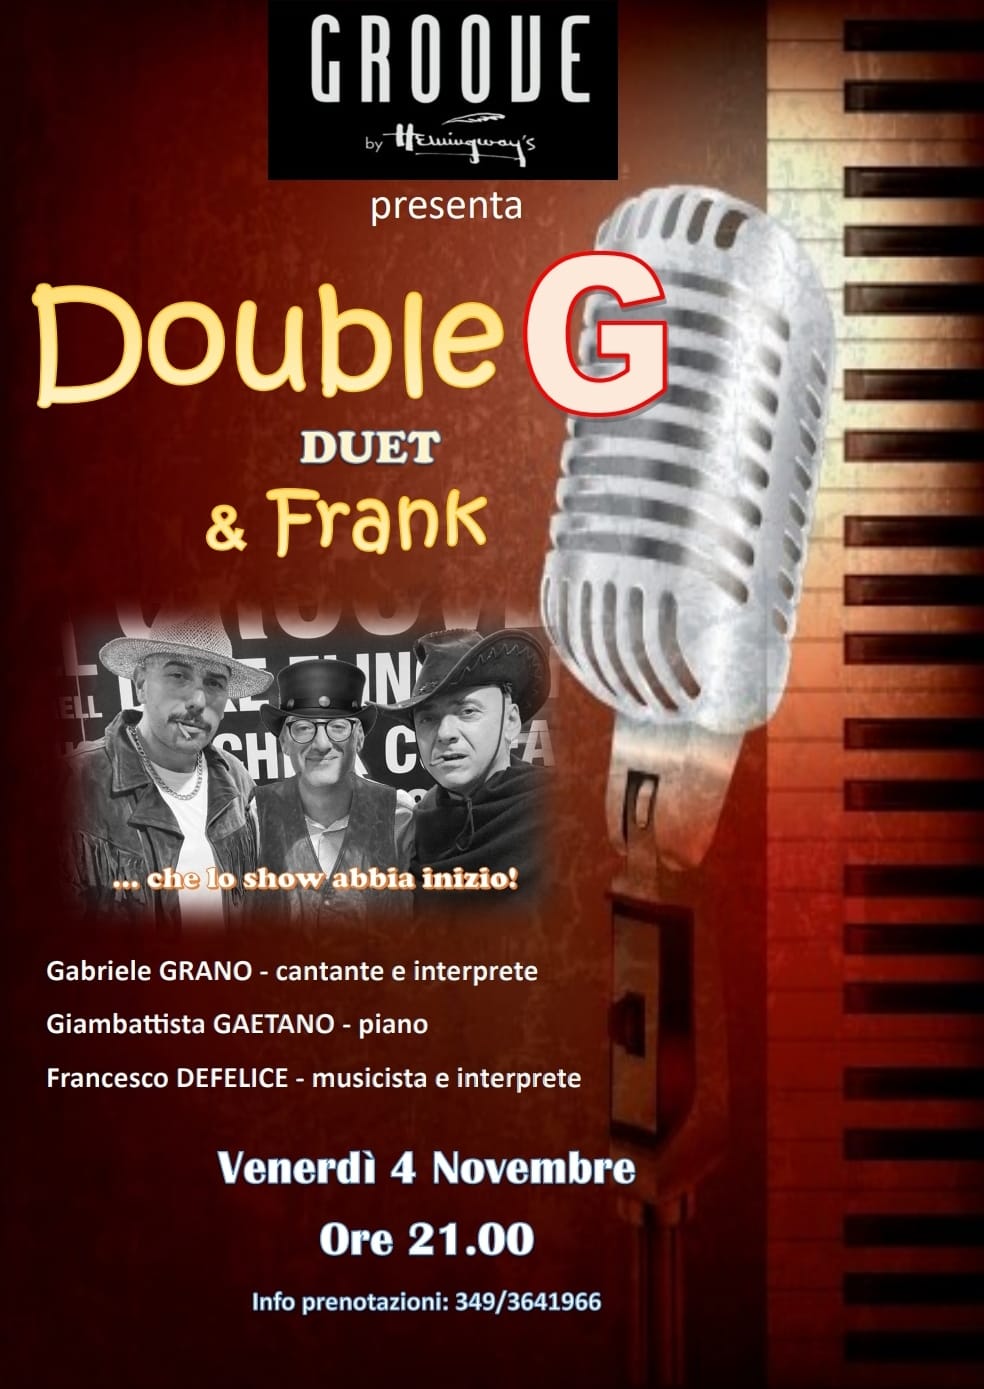 al-groove-di-matera,-stagy-concert-con-double-g-duet-&-frank